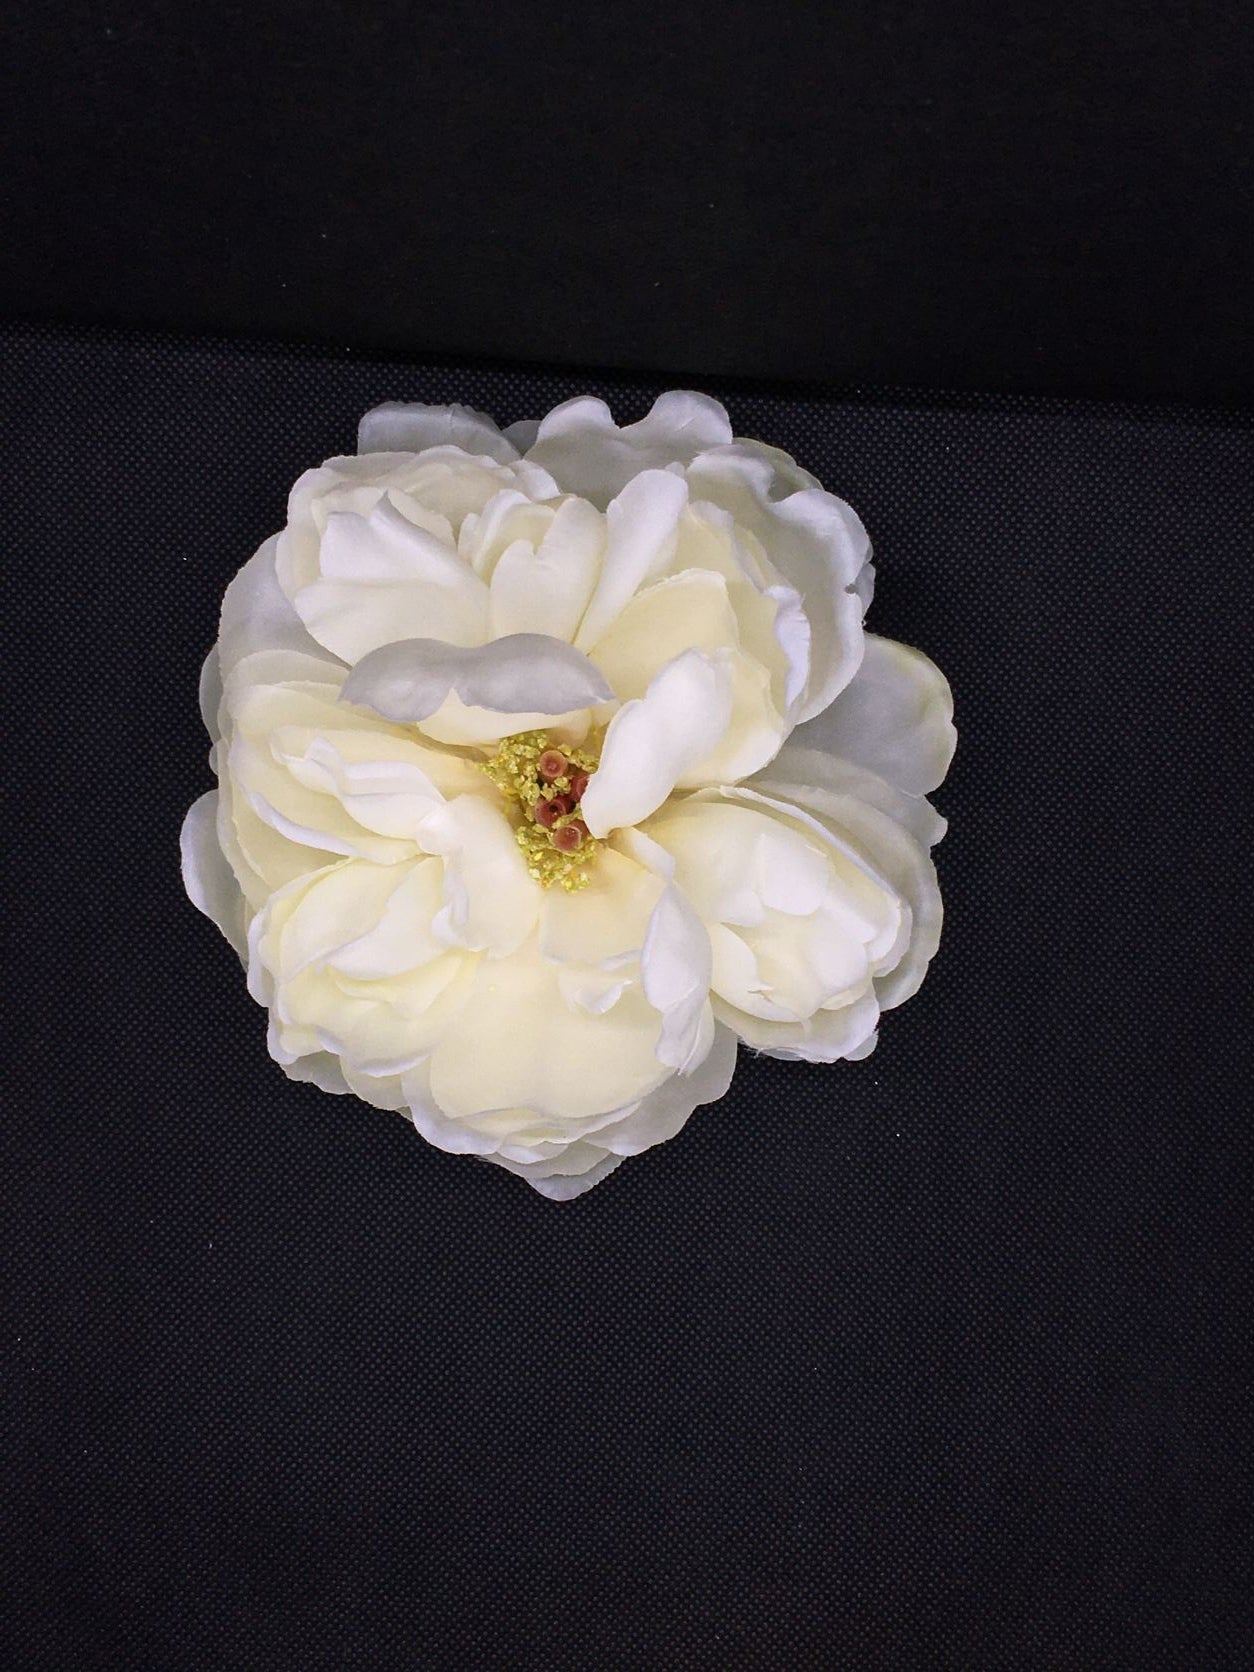 Fiore artificiale di Peonia di colore bianco. Petali in tessuto, corolla e base galleggiante in plastica. Dimensioni: ø cm 13 x h 6. In negozio e online su tuttochic.it